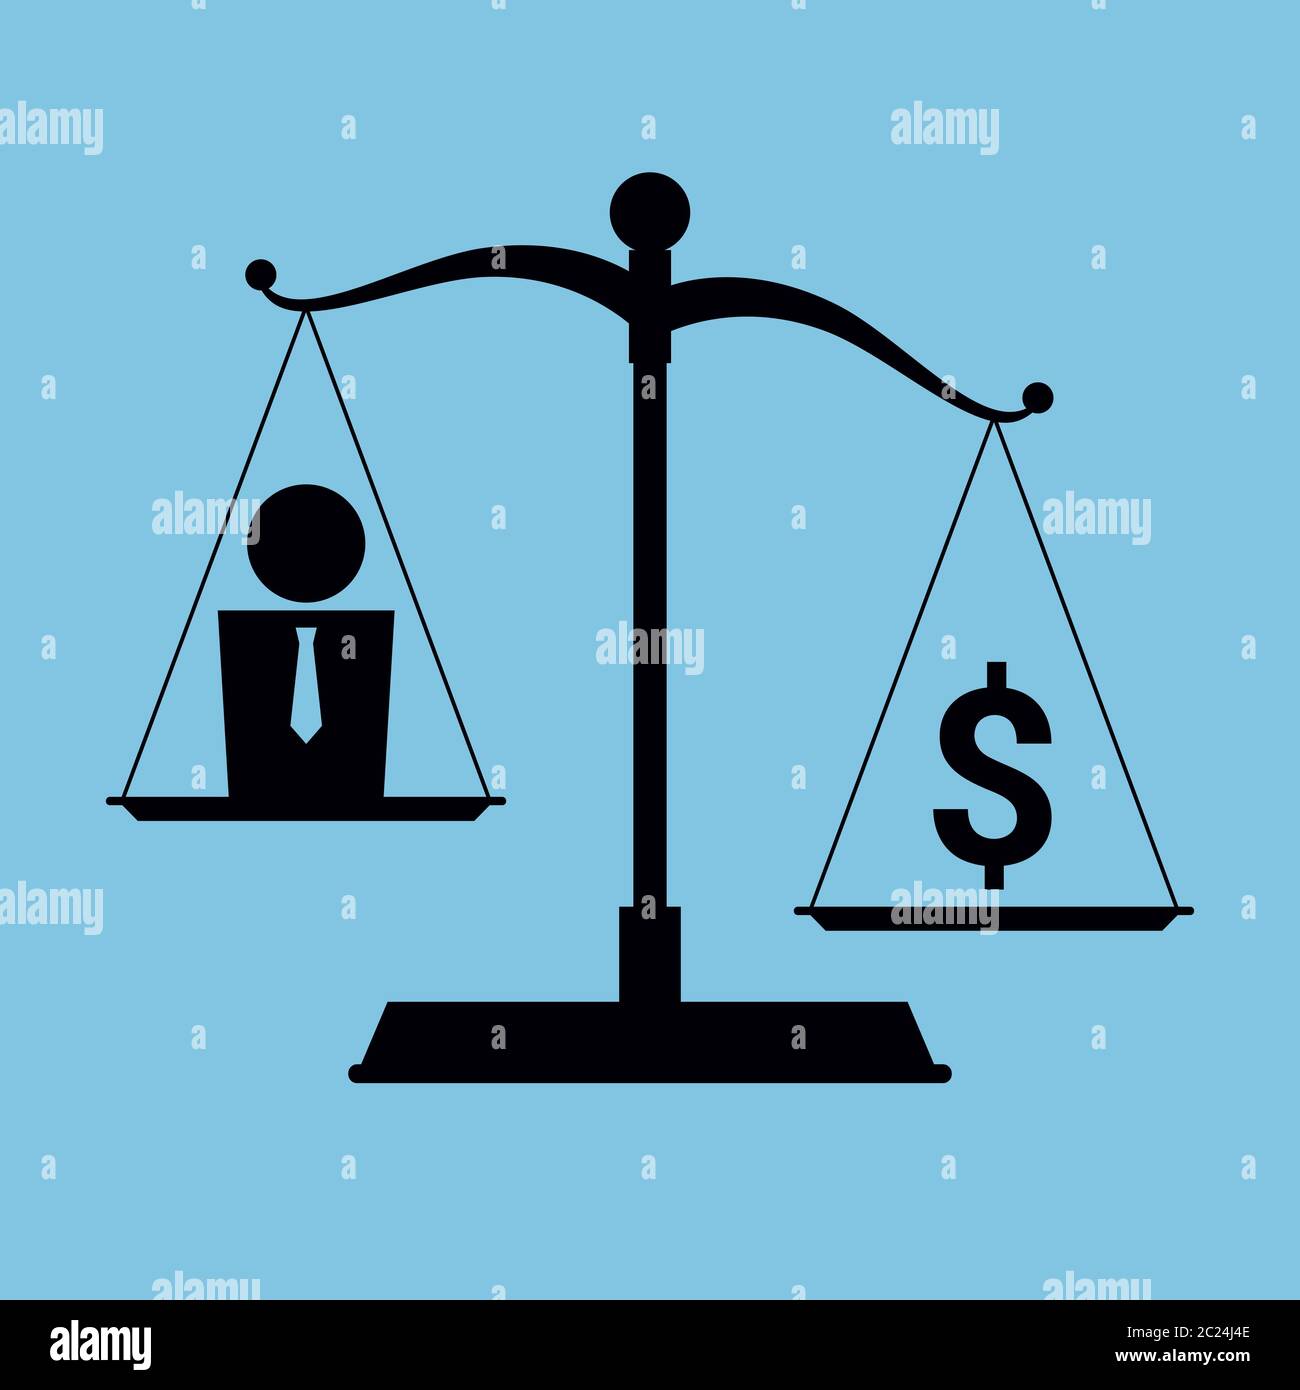 Vector ilustración simplificada sobre el tema del materialismo y la avaricia. Icono de una escala con un humano en la sartén y símbolo de dólar en la otra. Ilustración del Vector